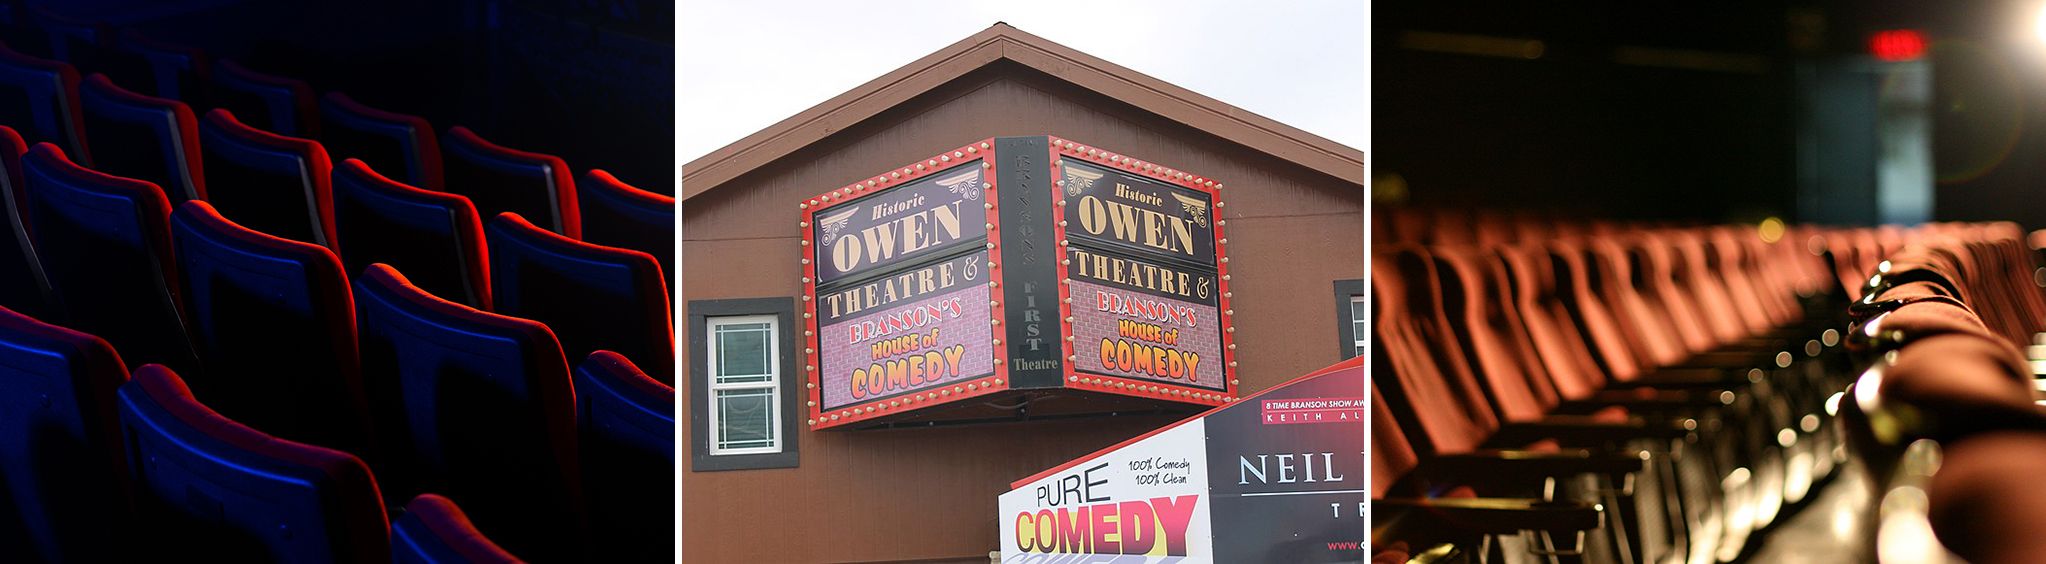 Owen's Theater